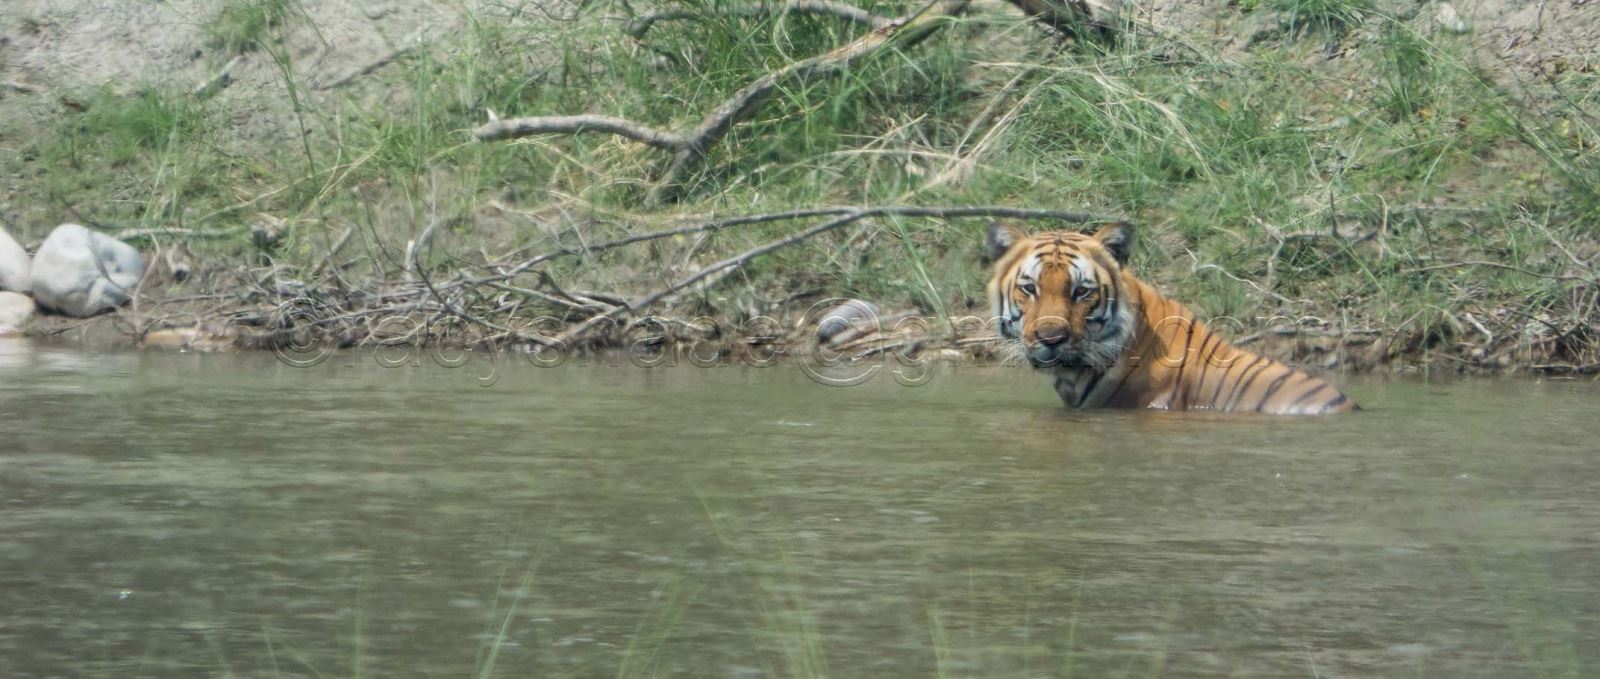 Tiger at Bardiya National Park